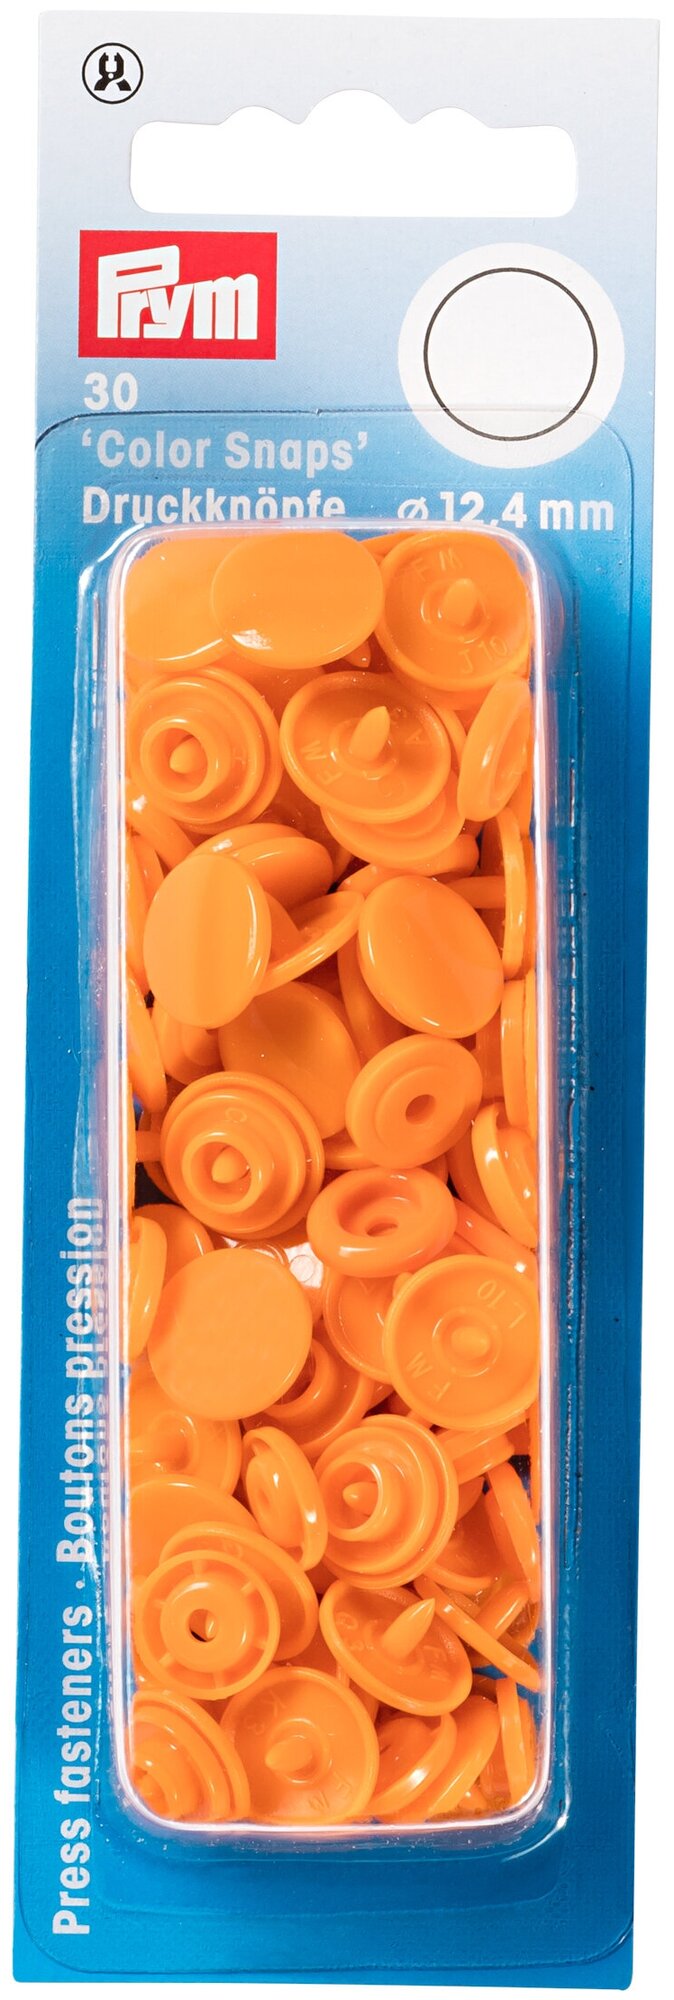 Кнопки Color Snaps цвет оранжевый 12,4мм 30 шт в уп PRYM 393140